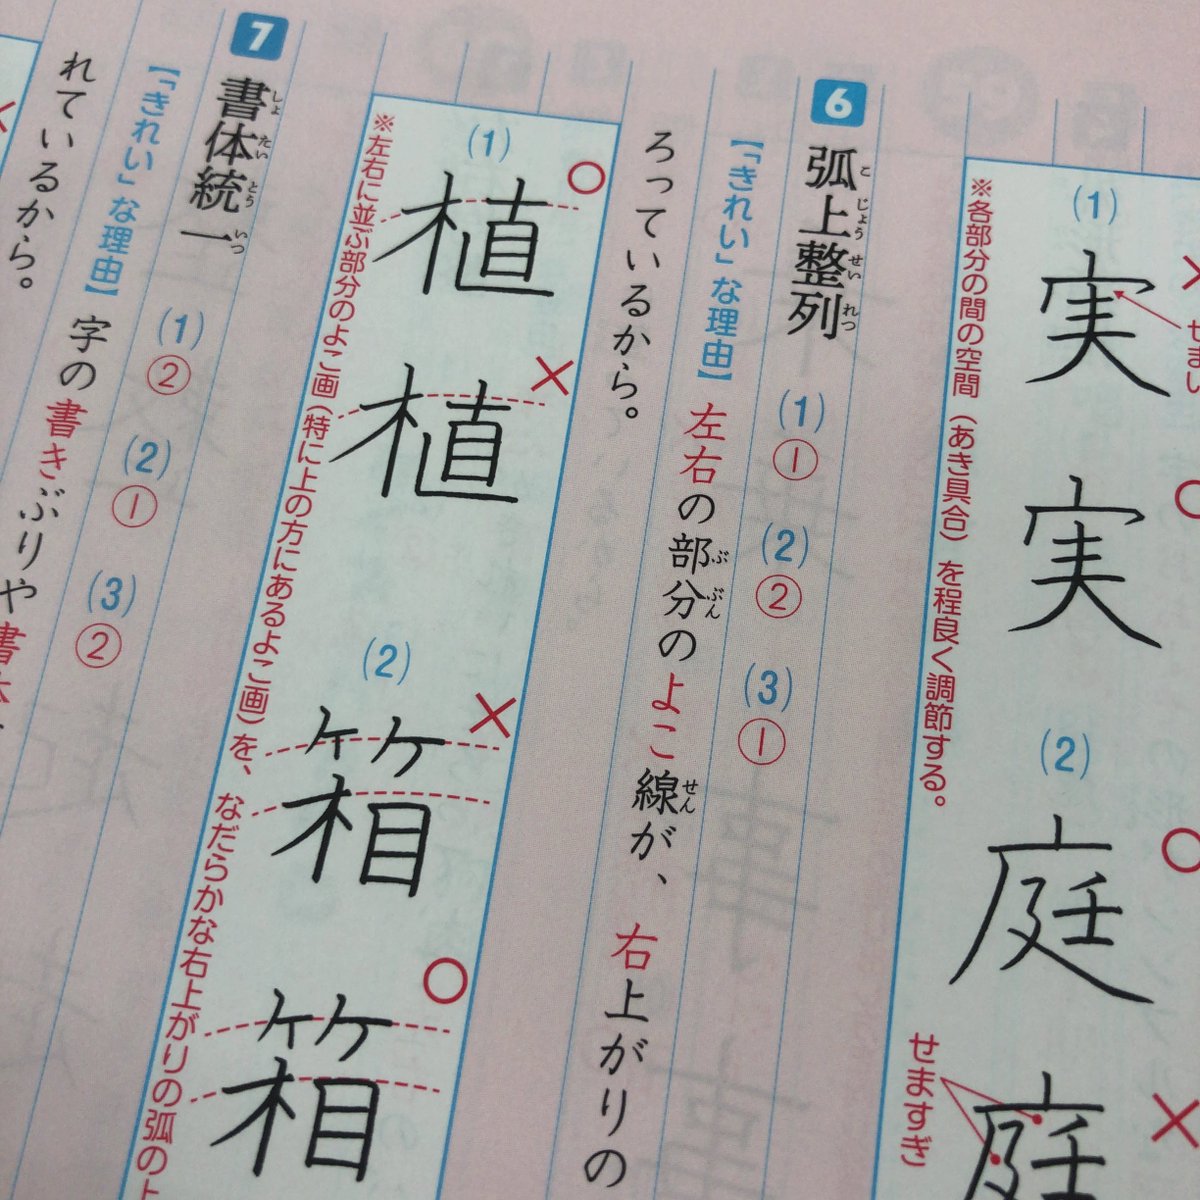 東進ブックス 東進ブックス リーダードリル 漢字 のここが凄い その7 巻末には きれいな字のひみつ を掲載 きれいな字を書くコツが分かりやすく説明されているので 小学生から大人まで きれいな字を書きたい人は必見です 読めば実際に書いてみ